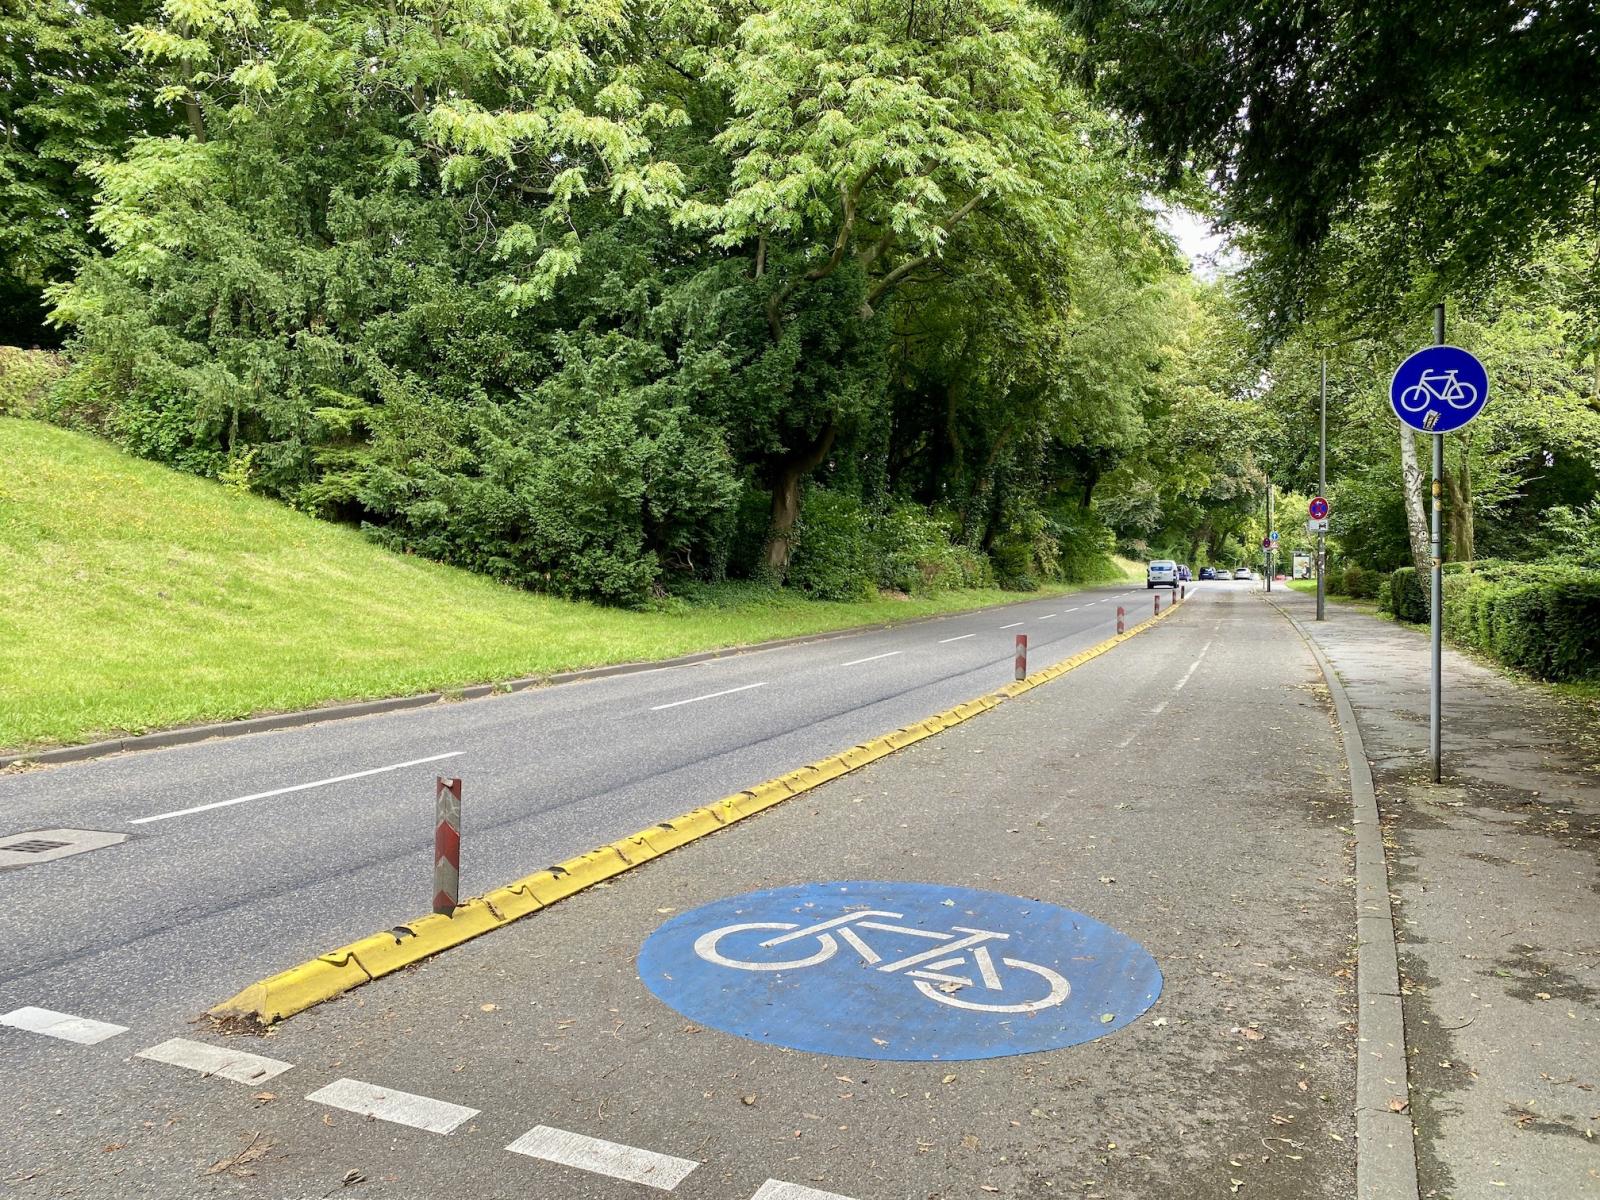 Bild: Beginn der Protected Bike Lane an der Saarstraße